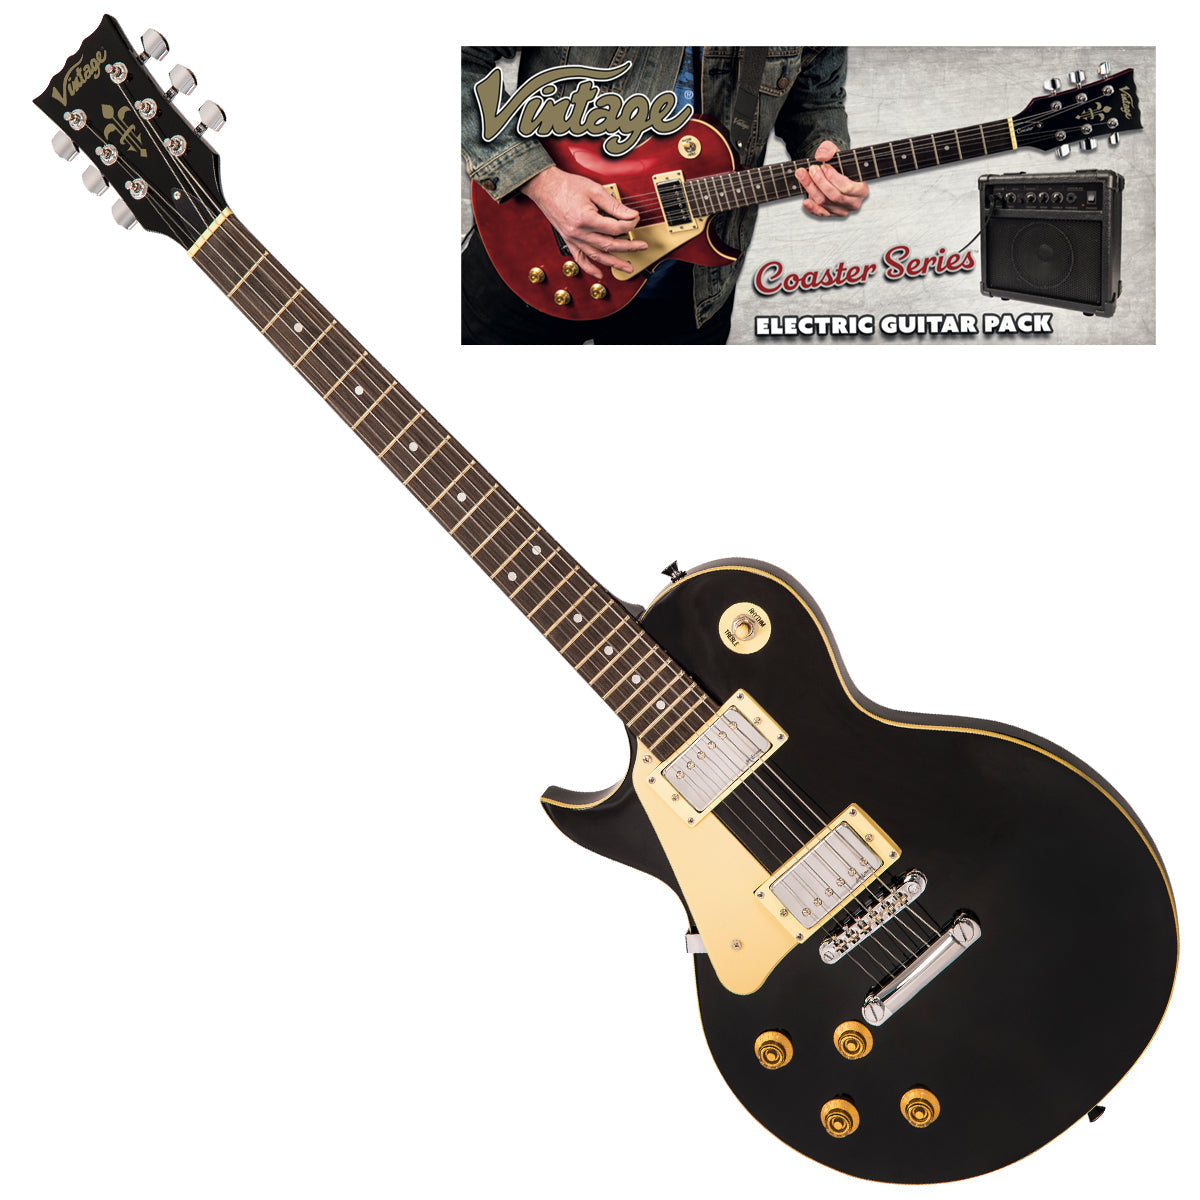 Vintage V10 Coaster Series Electric Guitar Pack ~ Left Hand Boulevard Black, Left Hand Electric Guitars for sale at Richards Guitars.